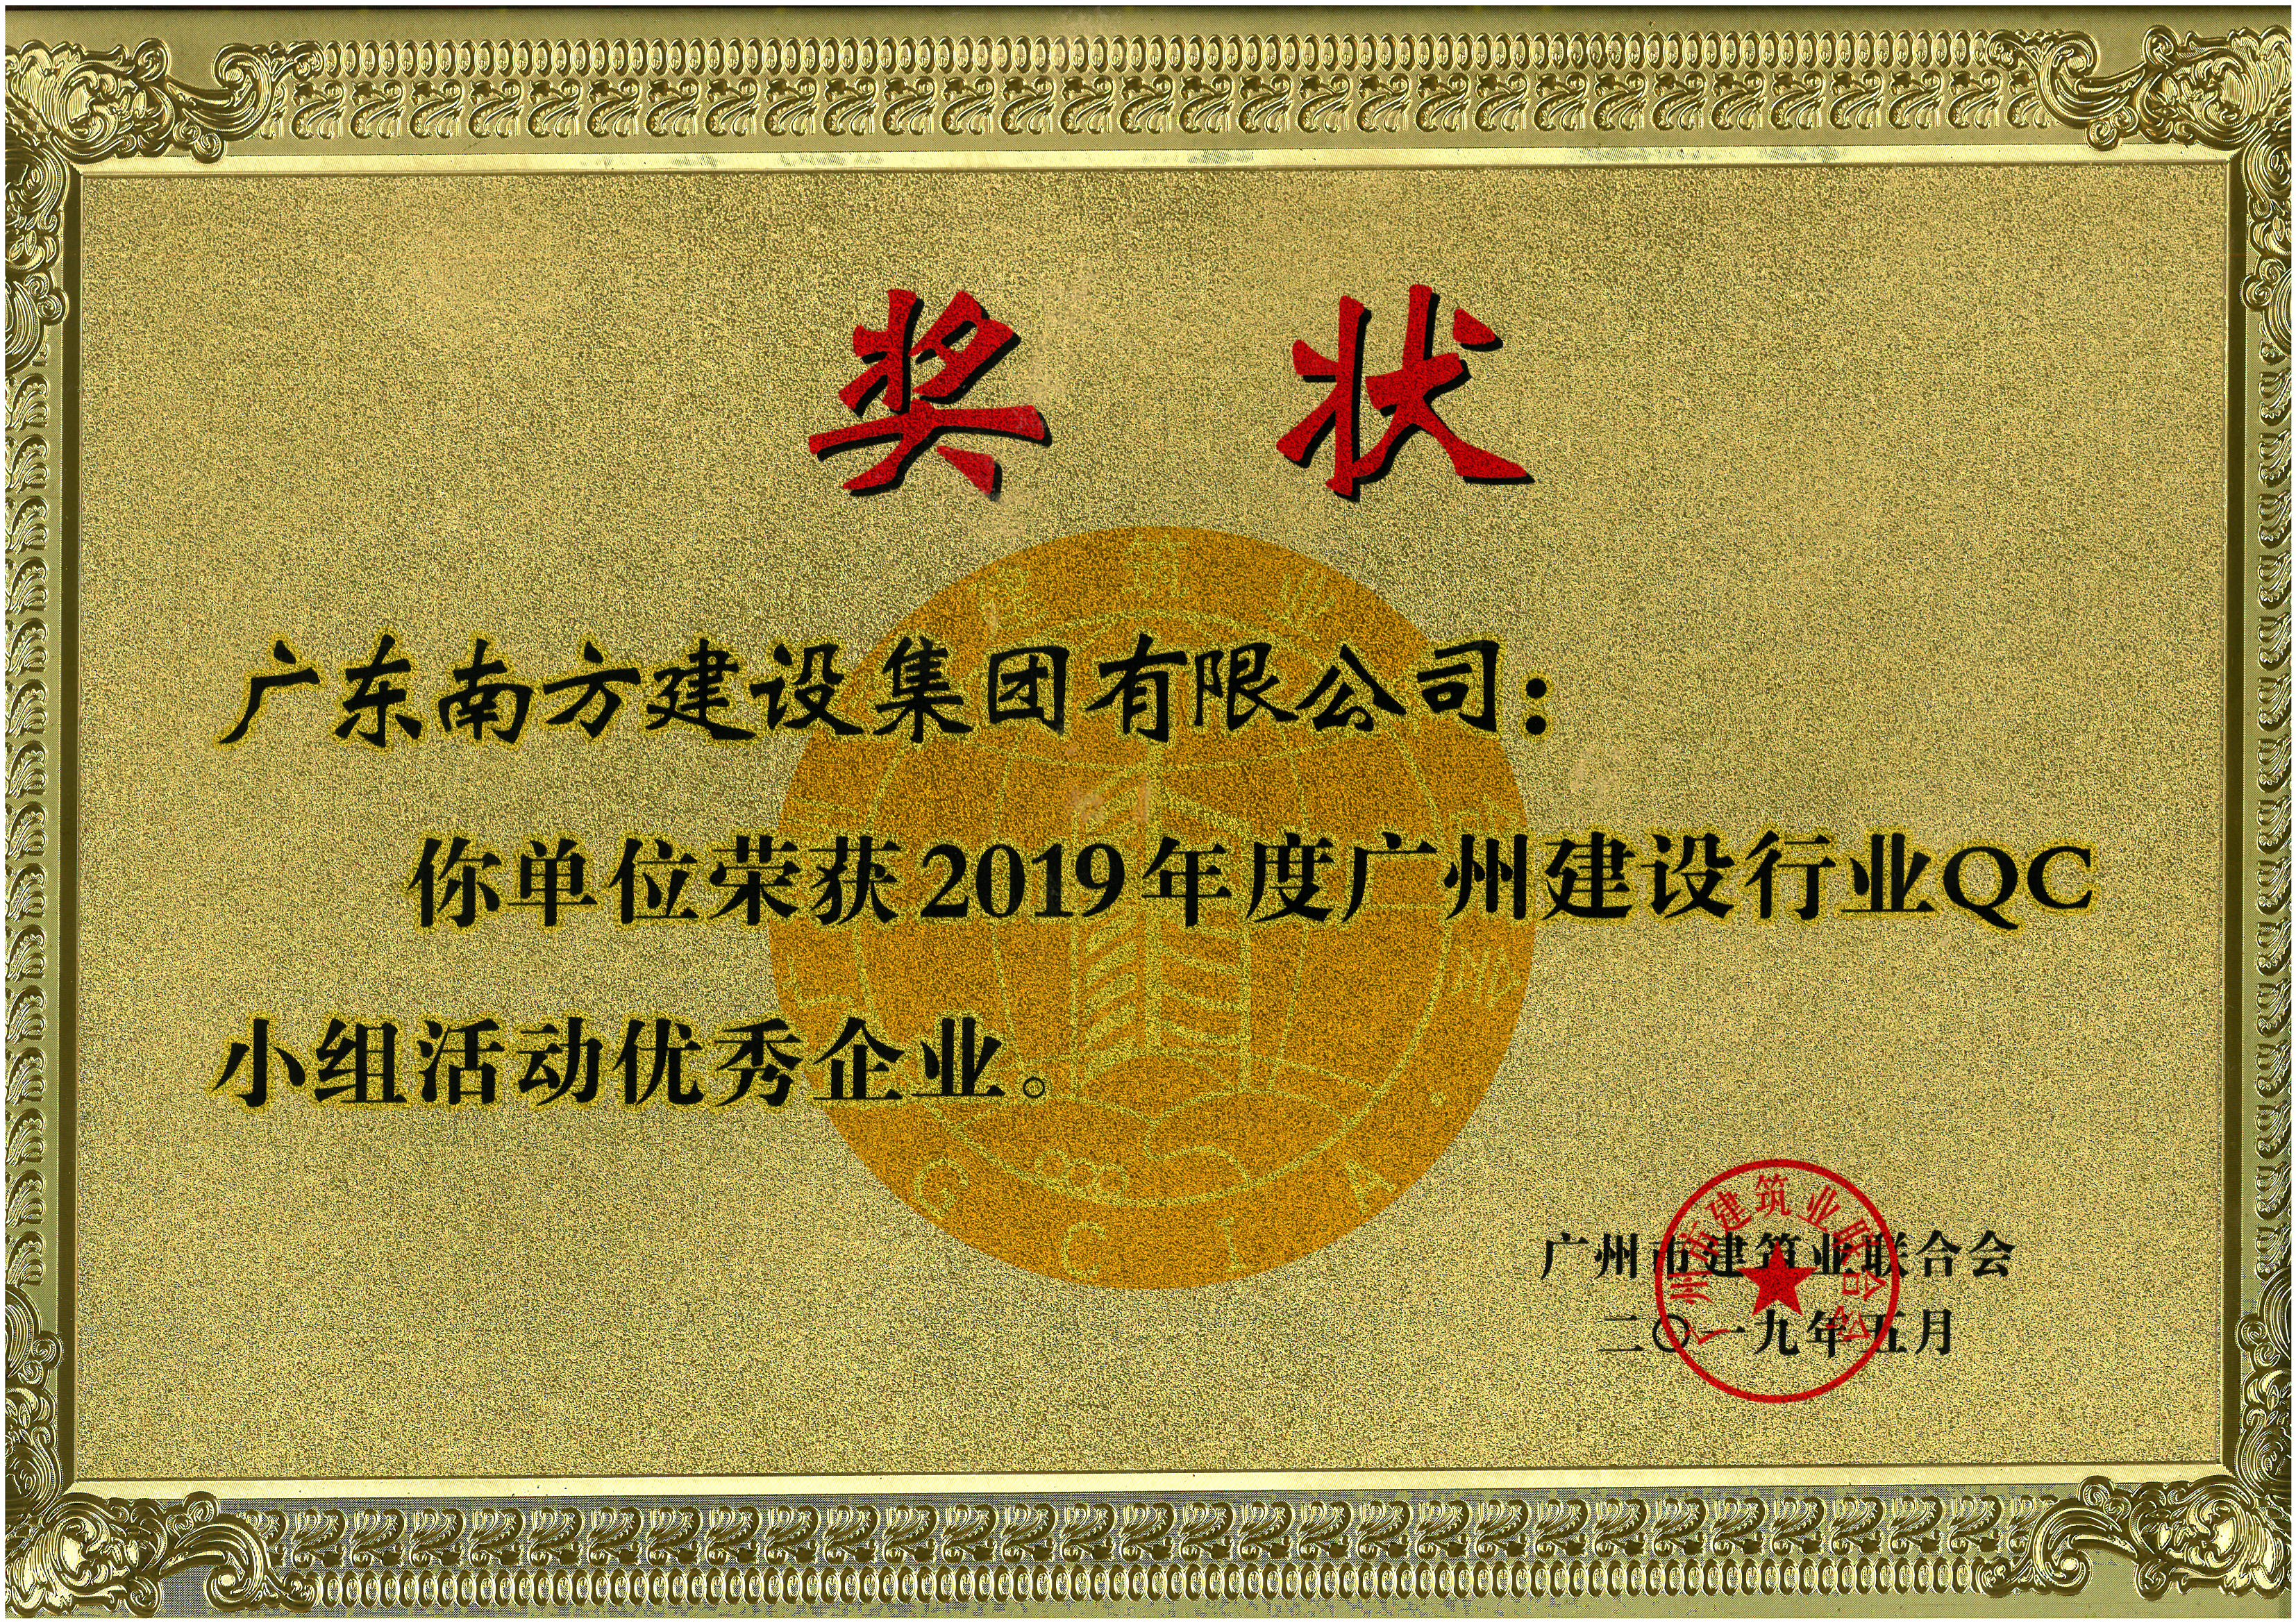 2019年度广州建设行业QC小组活动优秀企业-牌匾.